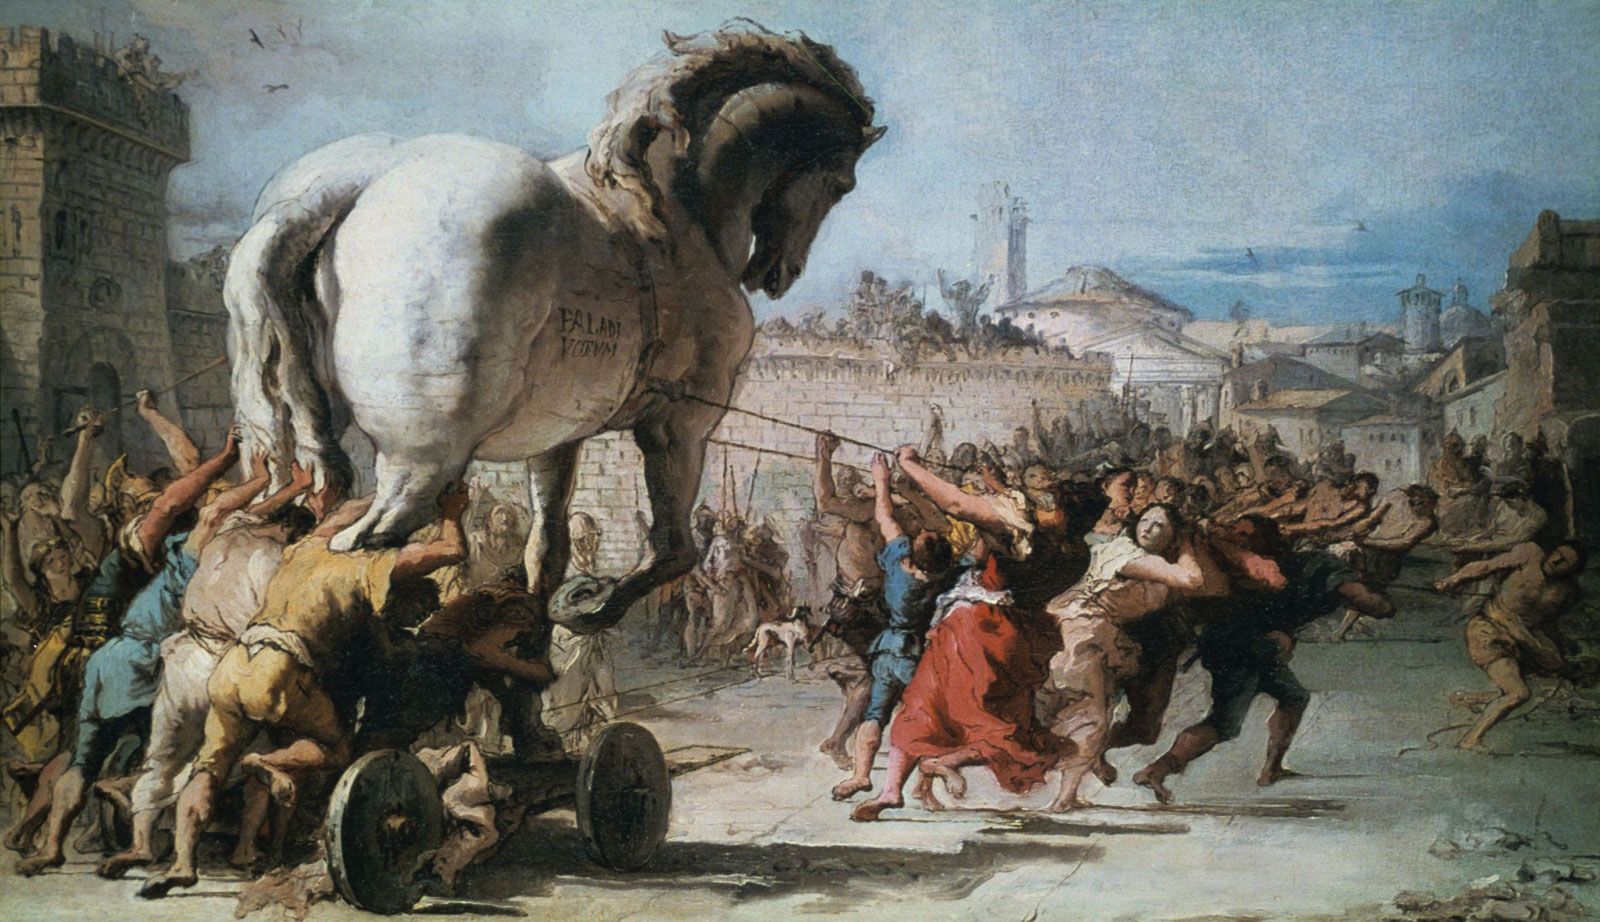 De Trojaanse oorlog: het beroemde conflict uit de oudheid